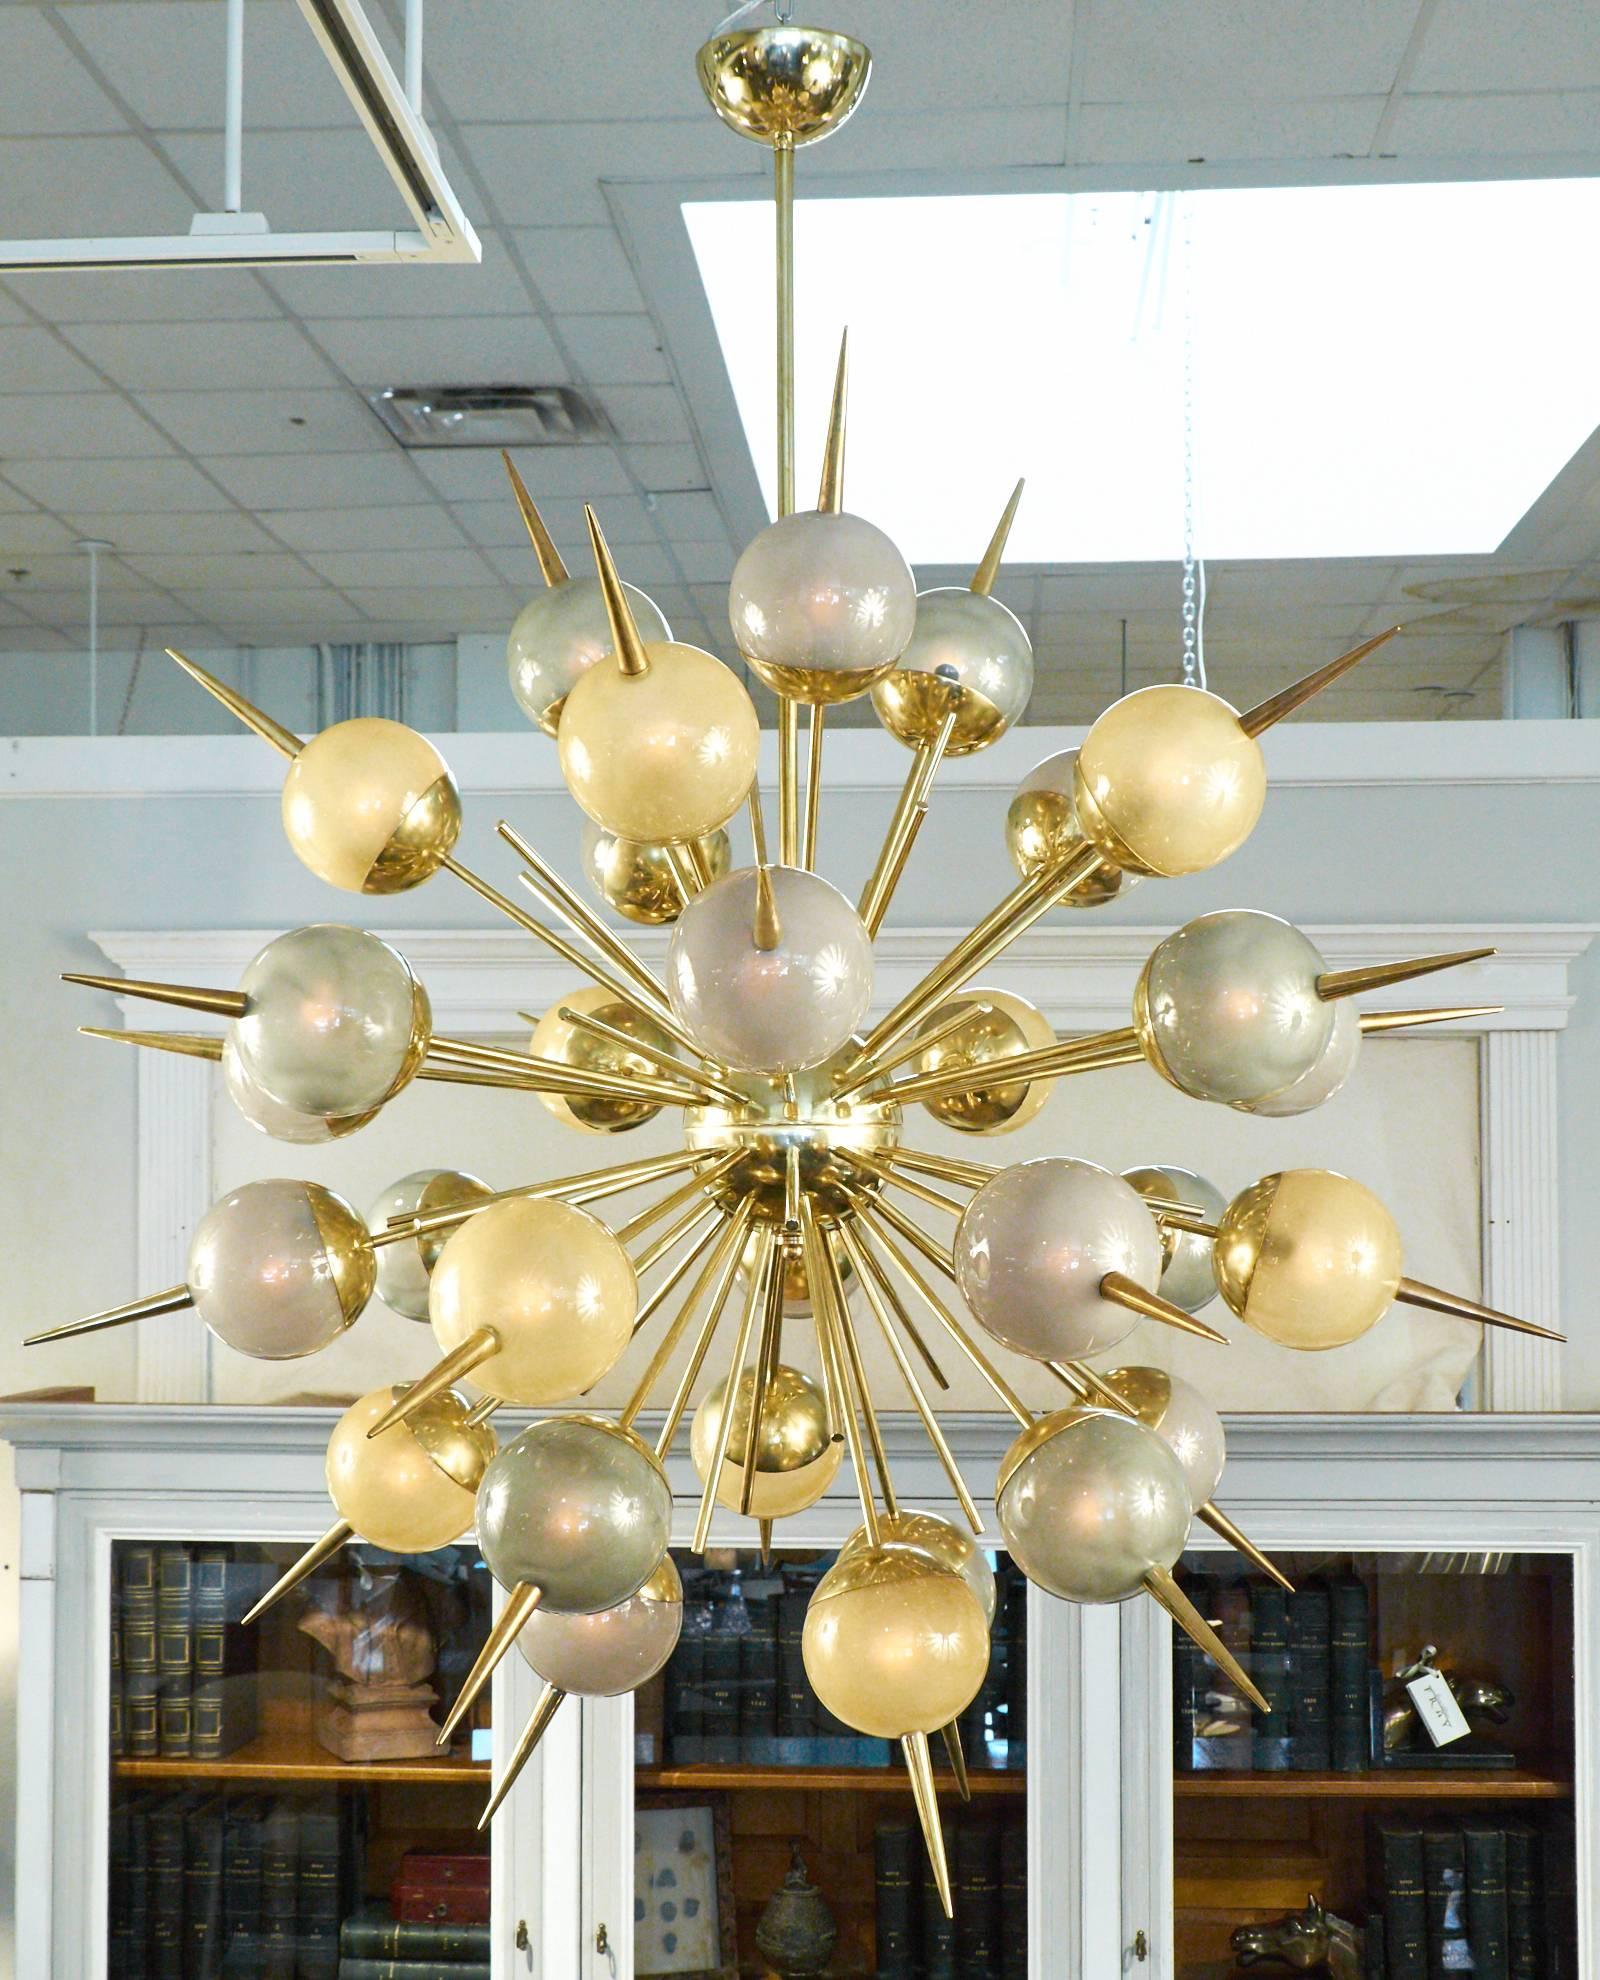 L'étonnant lustre de style Sputnik en verre de Murano et laiton avec un ensemble de 30 globes en verre de Murano doré, vert et violet sur des tiges en laiton massif. Chaque globe est éclairé de l'intérieur par une ampoule à culot candélabre. Rewired